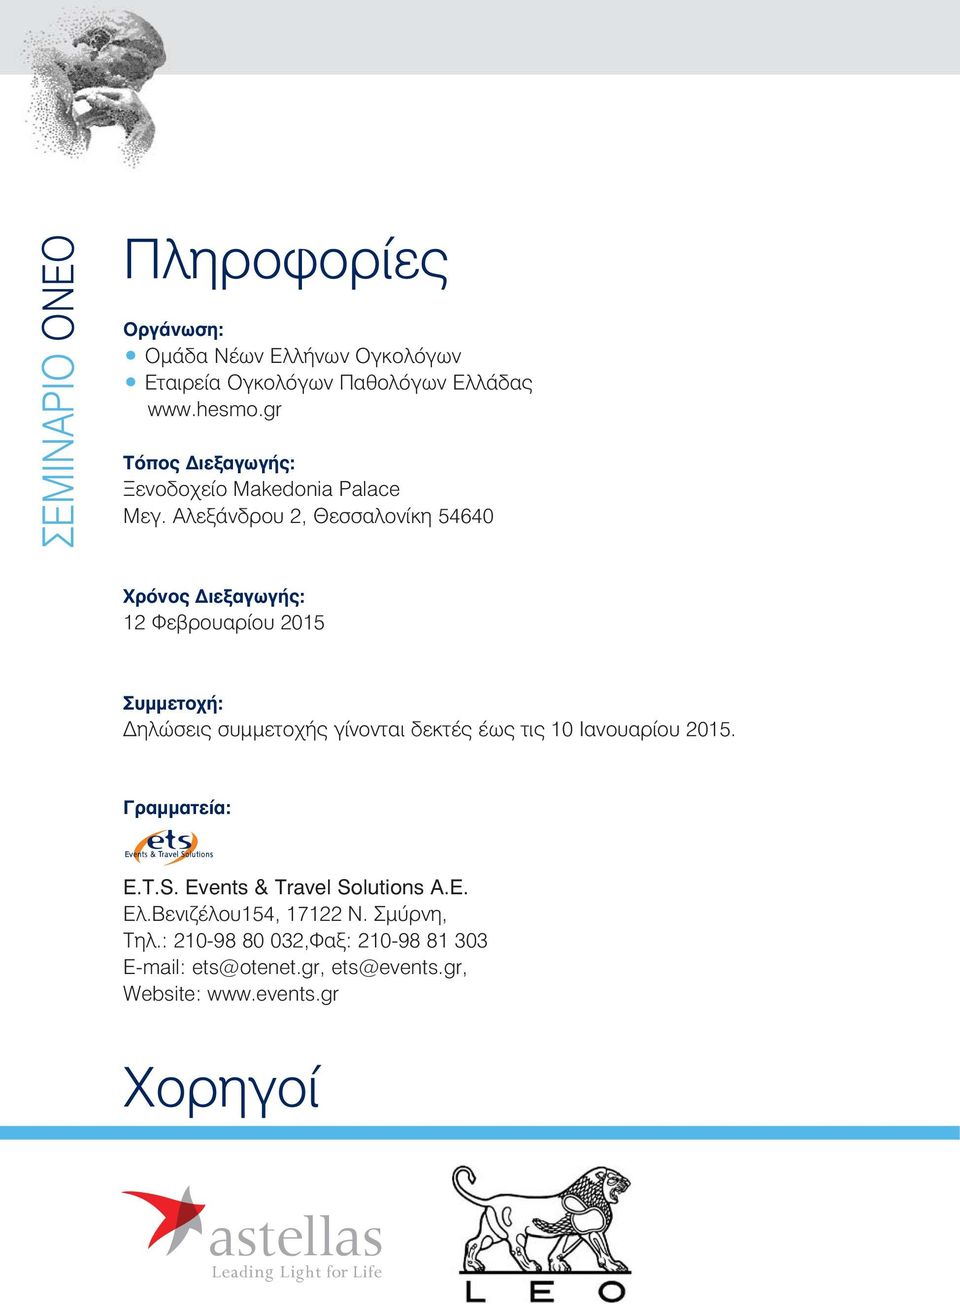 Αλεξάνδρου 2, Θεσσαλονίκη 54640 Χρόνος Διεξαγωγής: 12 Φεβρουαρίου 2015 Συμμετοχή: Δηλώσεις συμμετοχής γίνονται δεκτές έως τις